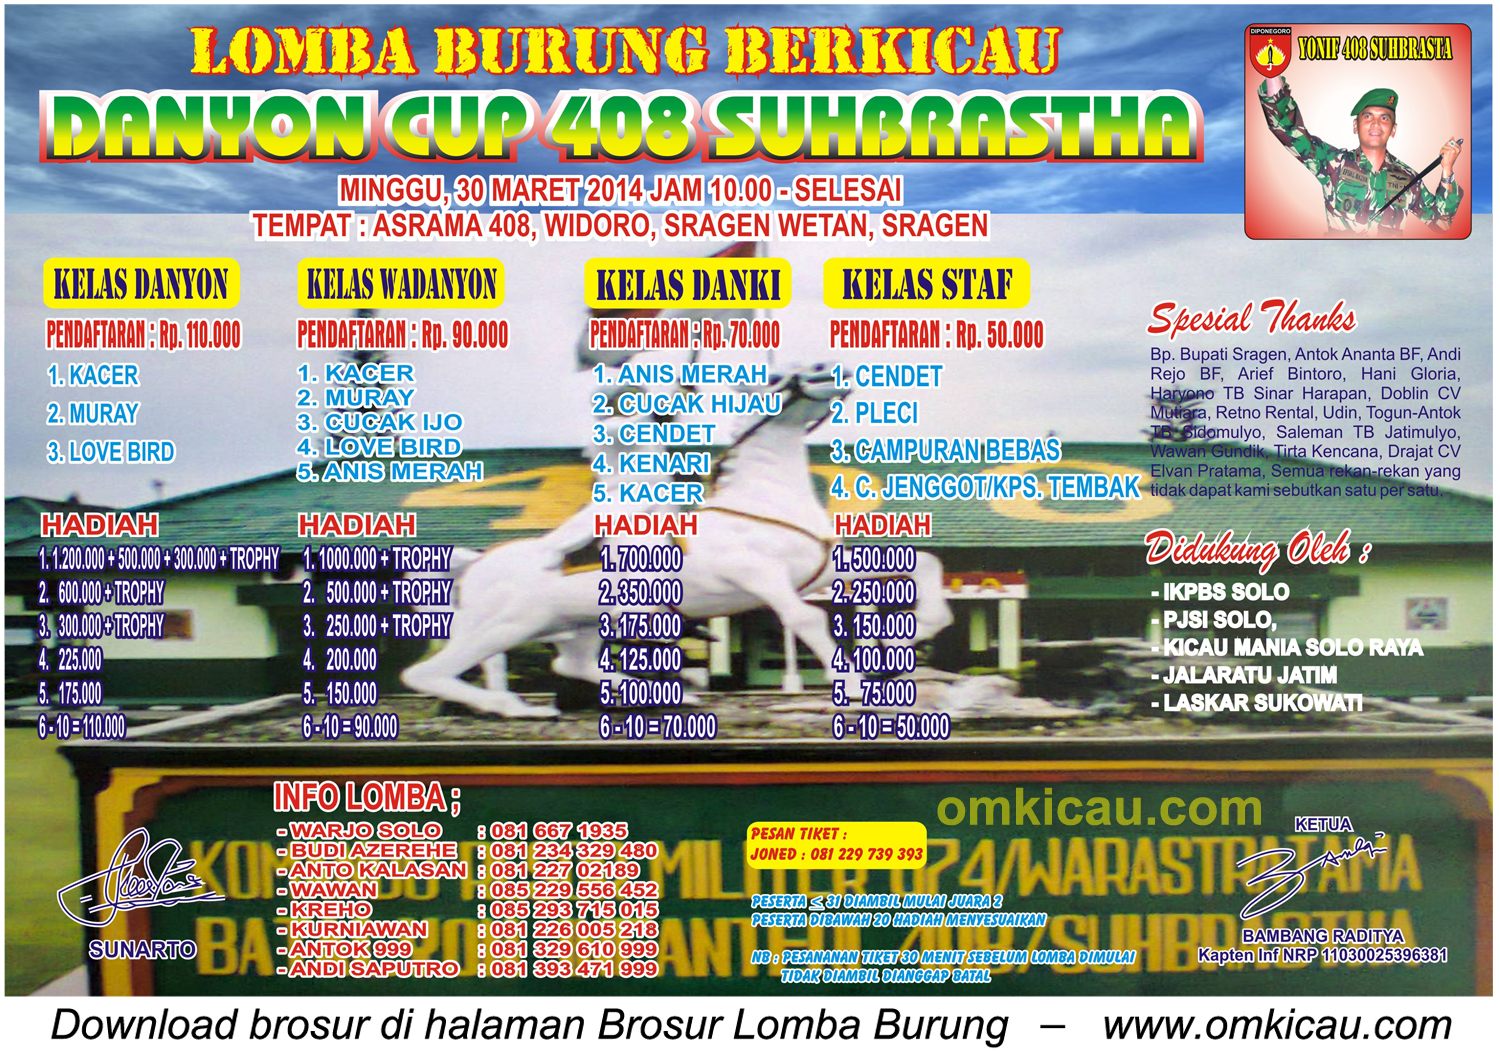 Brosur Lomba Burung Berkicau Danyon Cup 408 Suhbrastha, Sragen, 30 Maret 2014